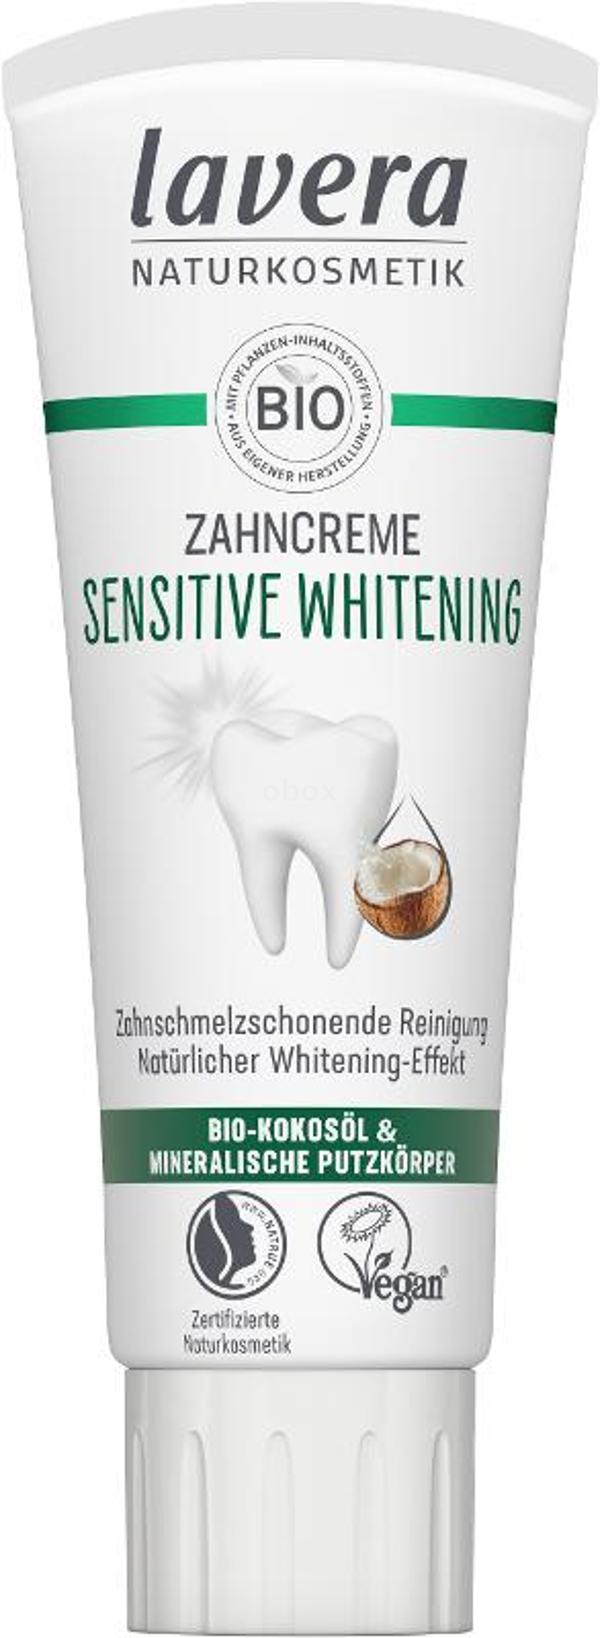 Produktfoto zu Zahncreme Whitening mit Fluorid